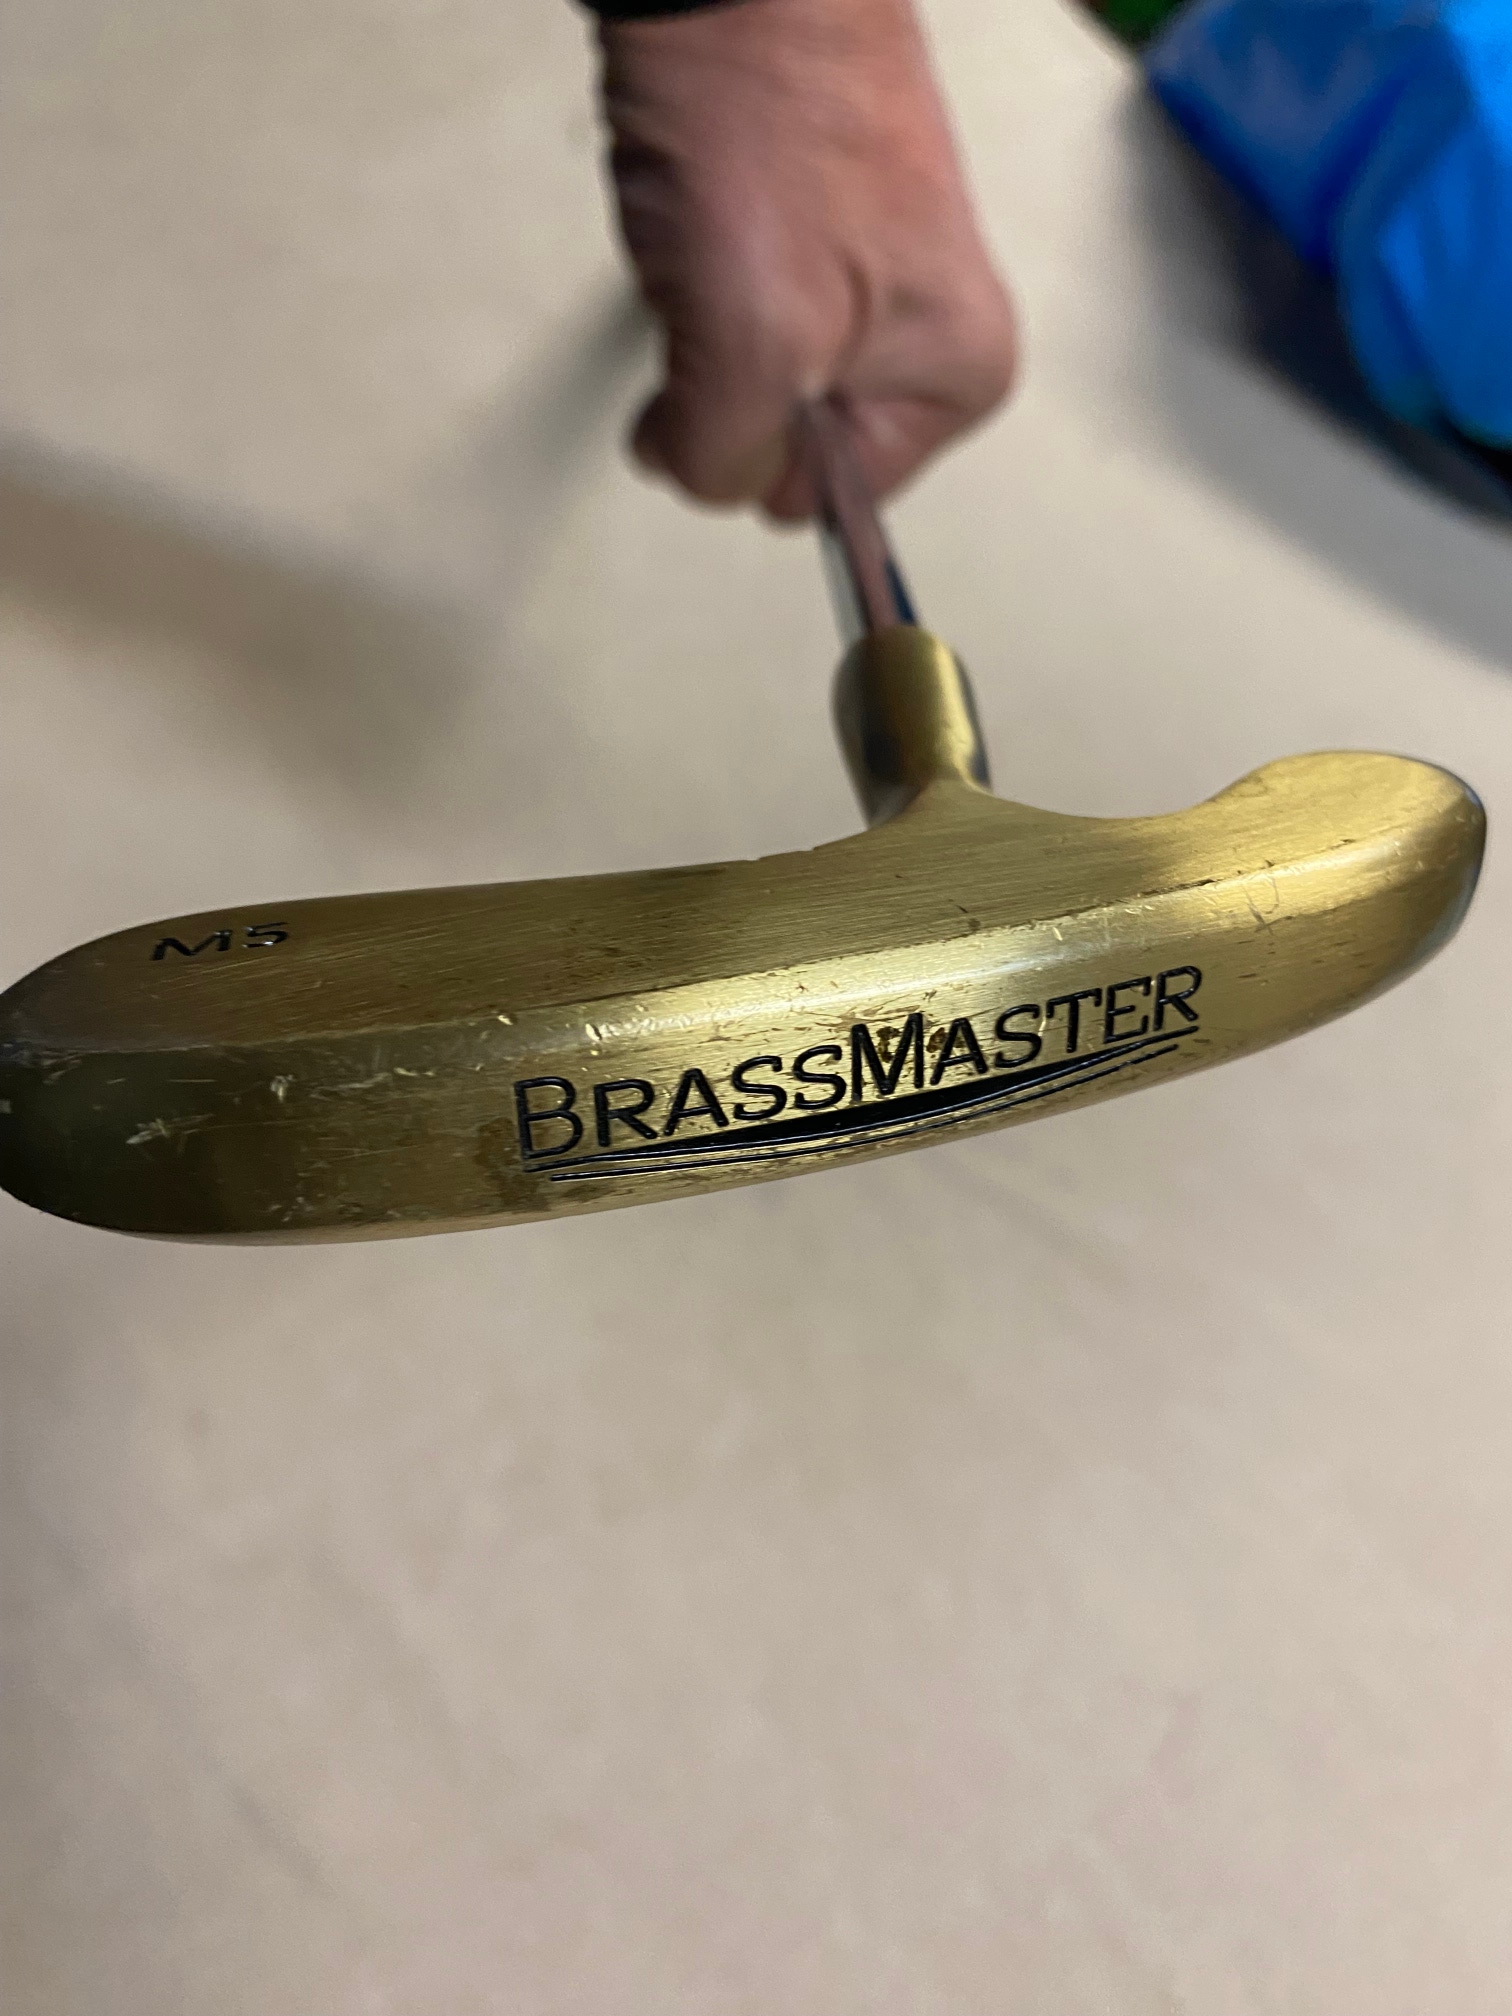 Used Blade Brassmaster Putter